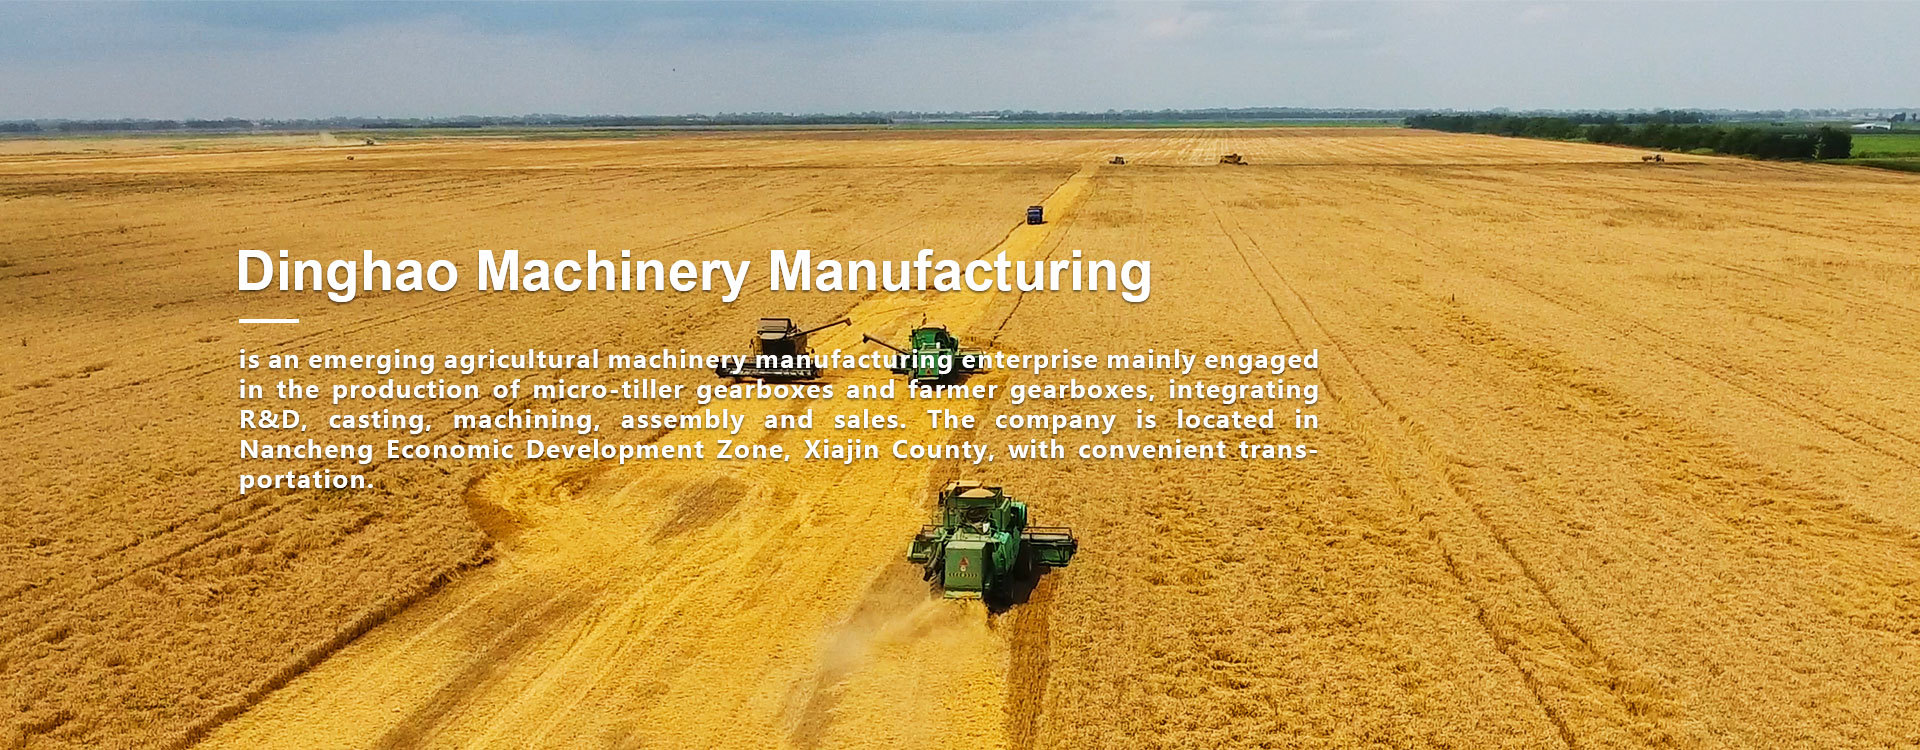 Xiajin County Dinghao Machinery Manufacturing Co., Ltd.